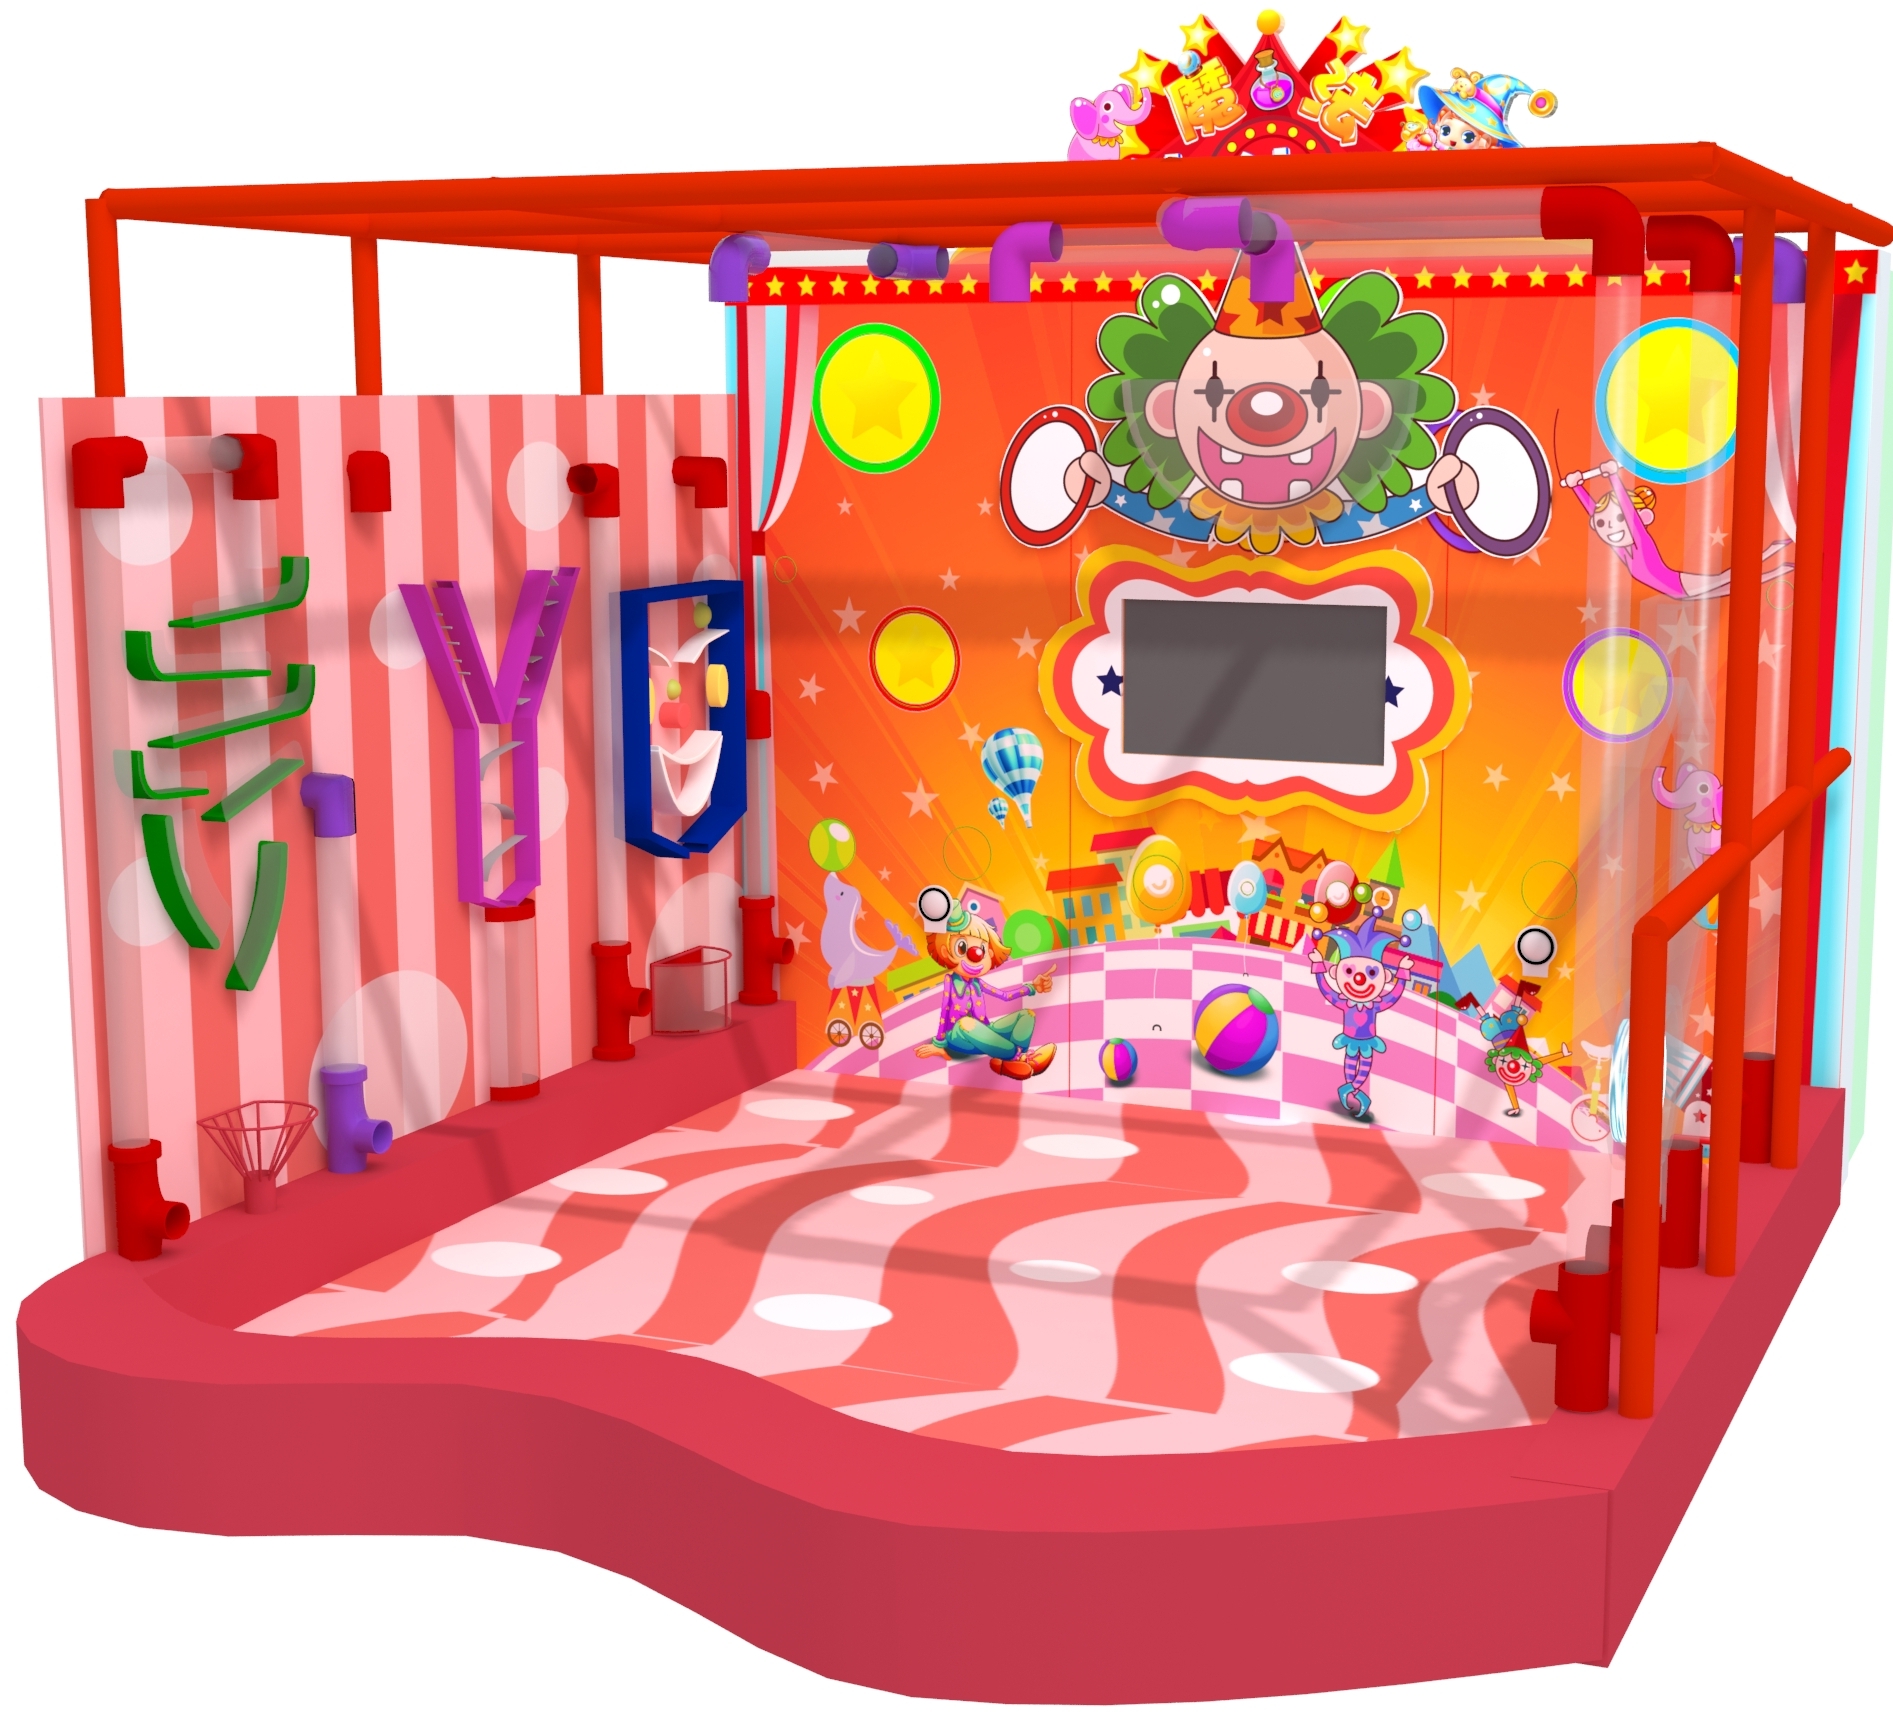 Развлечения оборудование. Развлекательное оборудование. Детская площадка с шариками. Игровое помещение. Развлекательный инвентарь для детей.